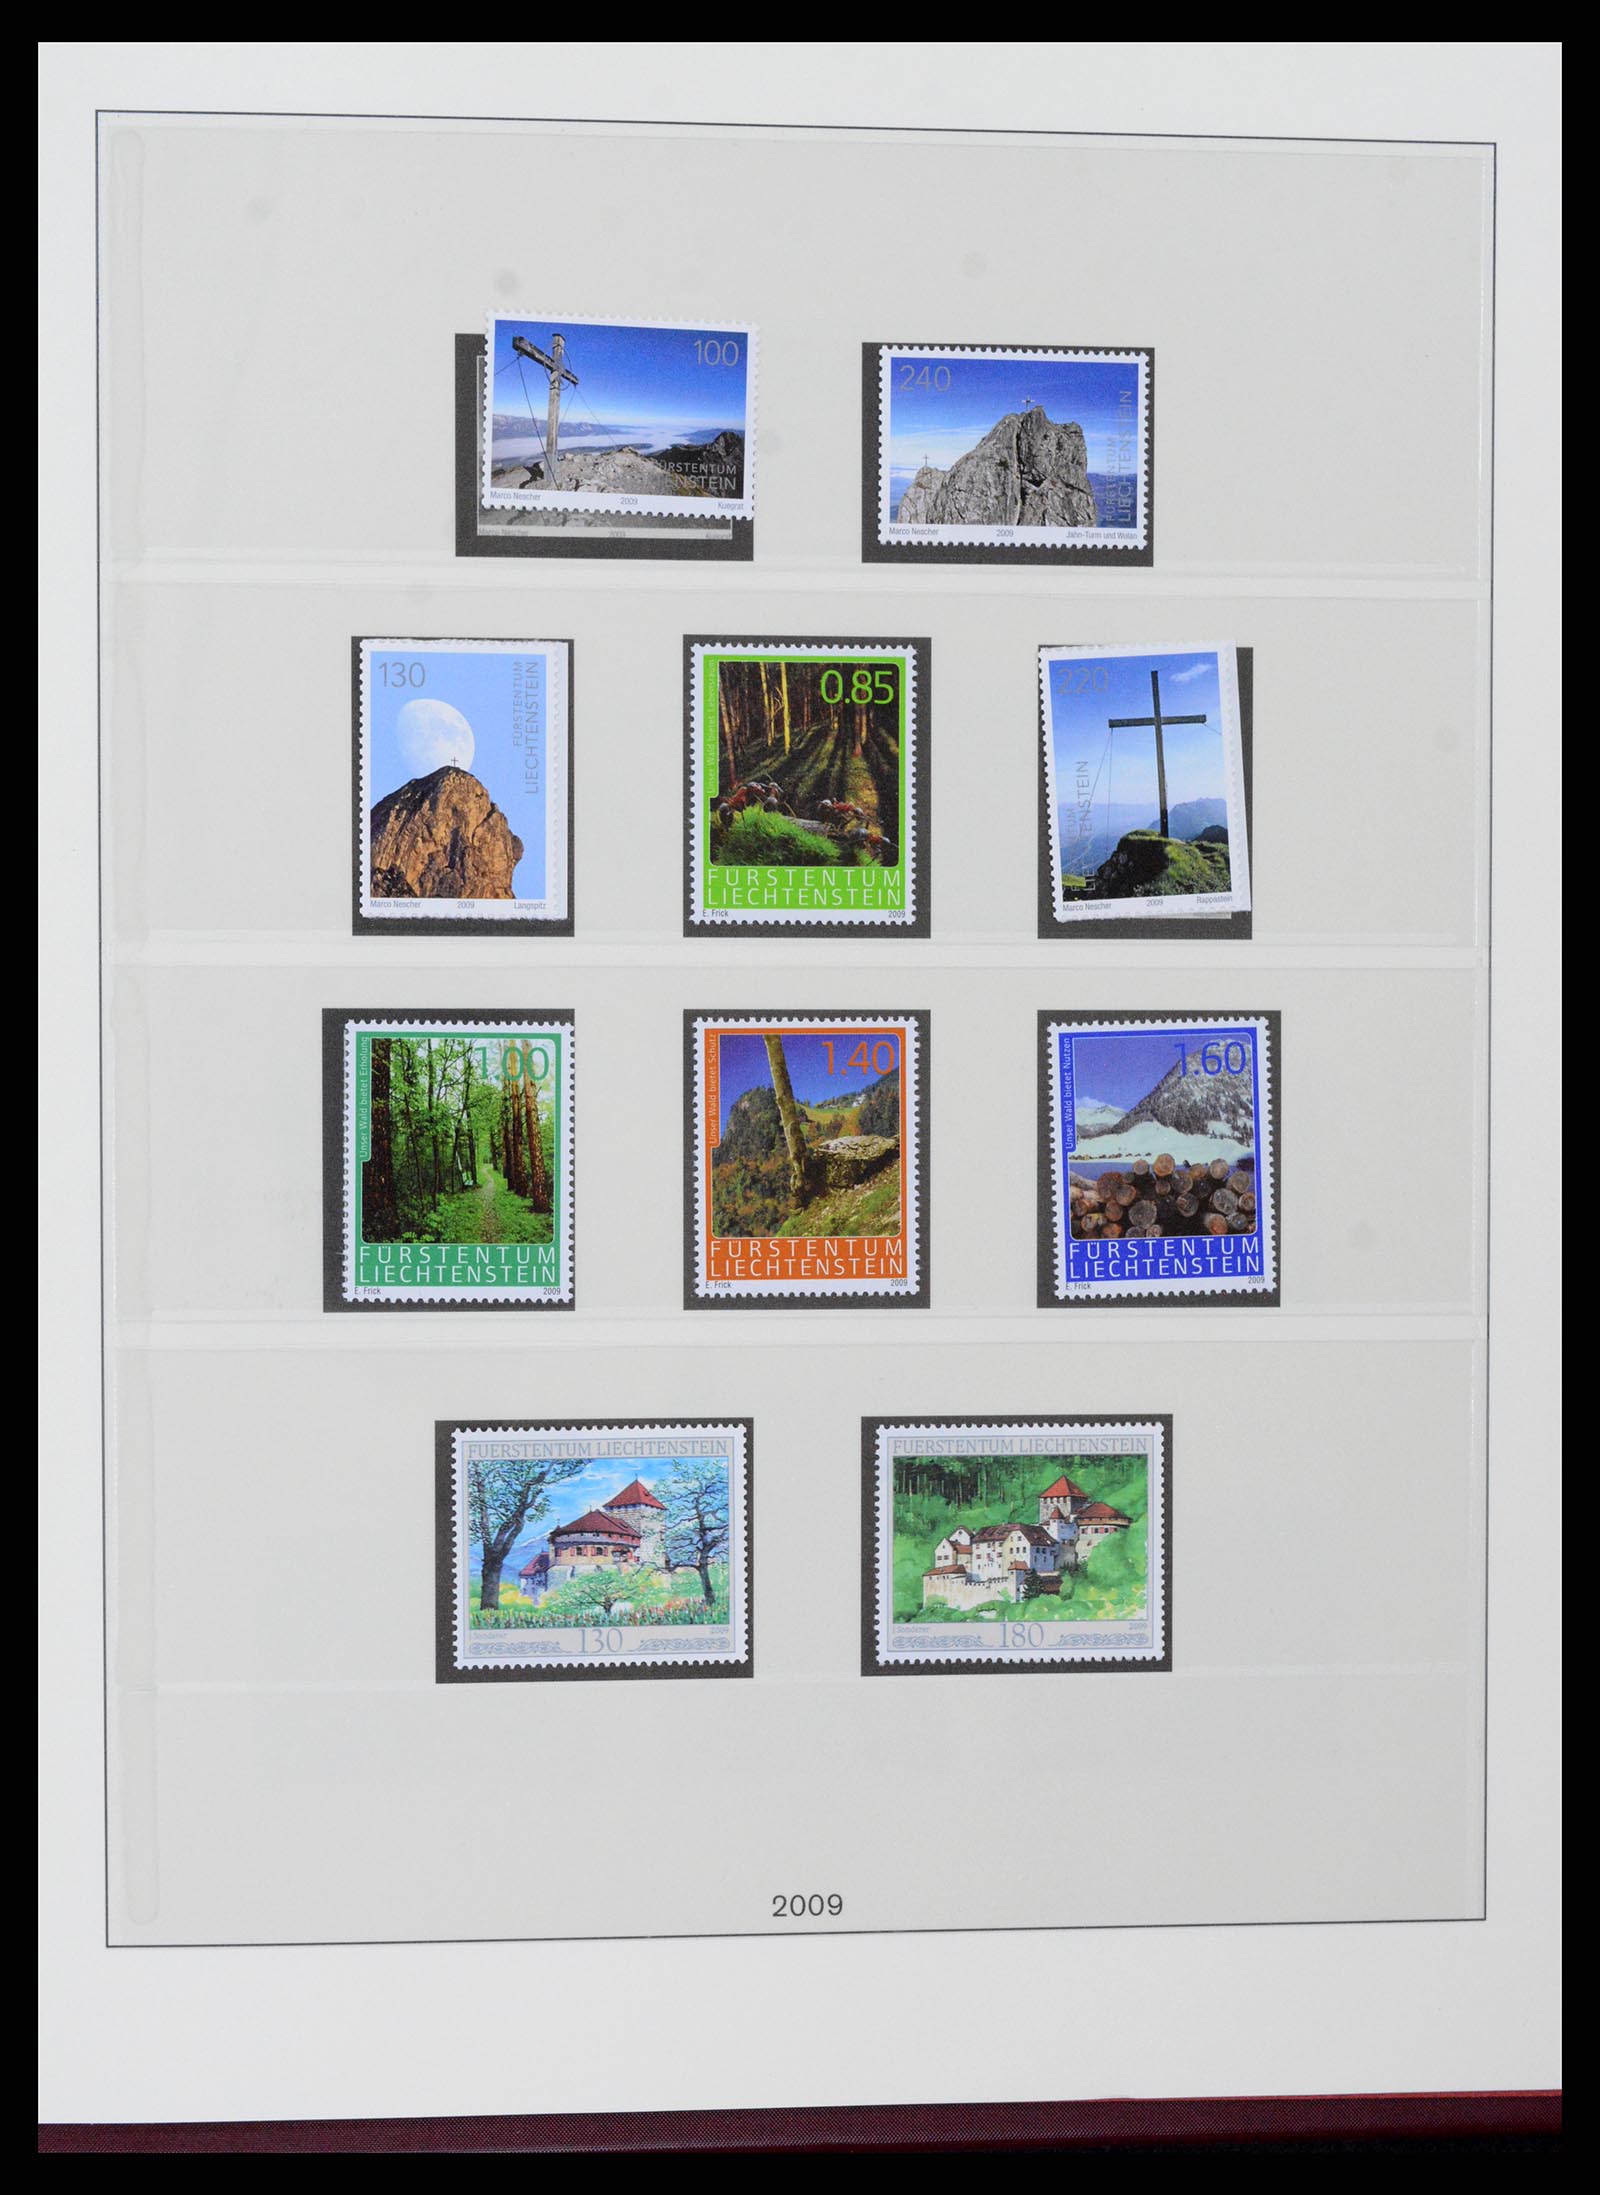 37295 151 - Stamp collection 37295 Liechtenstein 1912-2009.